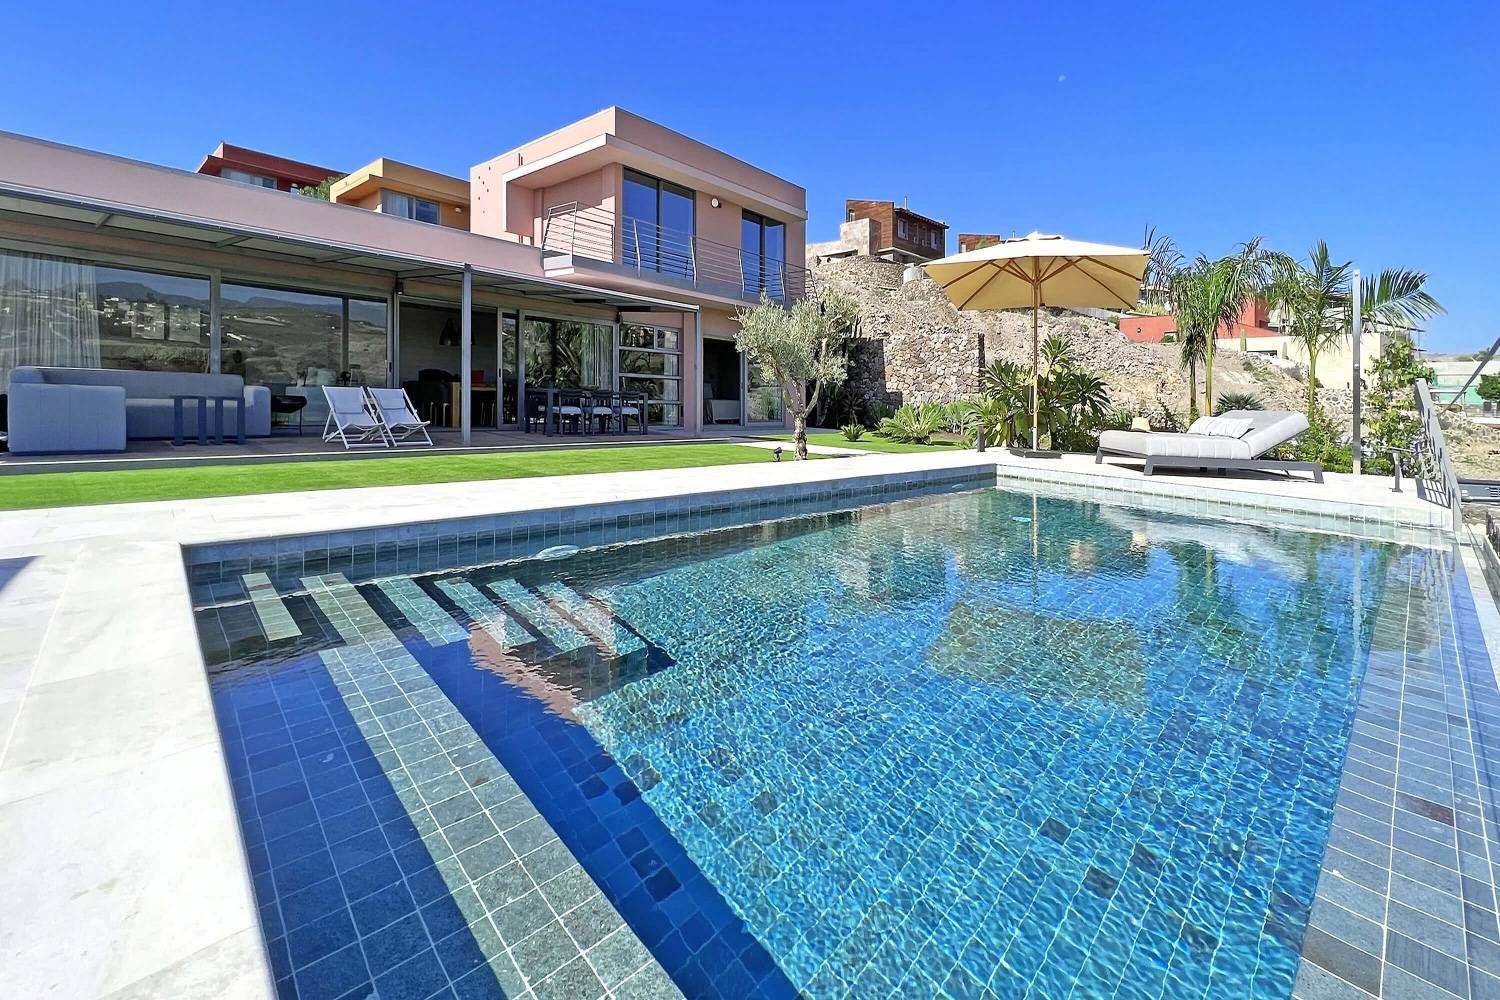 Schöne Luxusvilla, hell, geschmackvoll eingerichtet und eine große Terrasse mit privatem Pool.